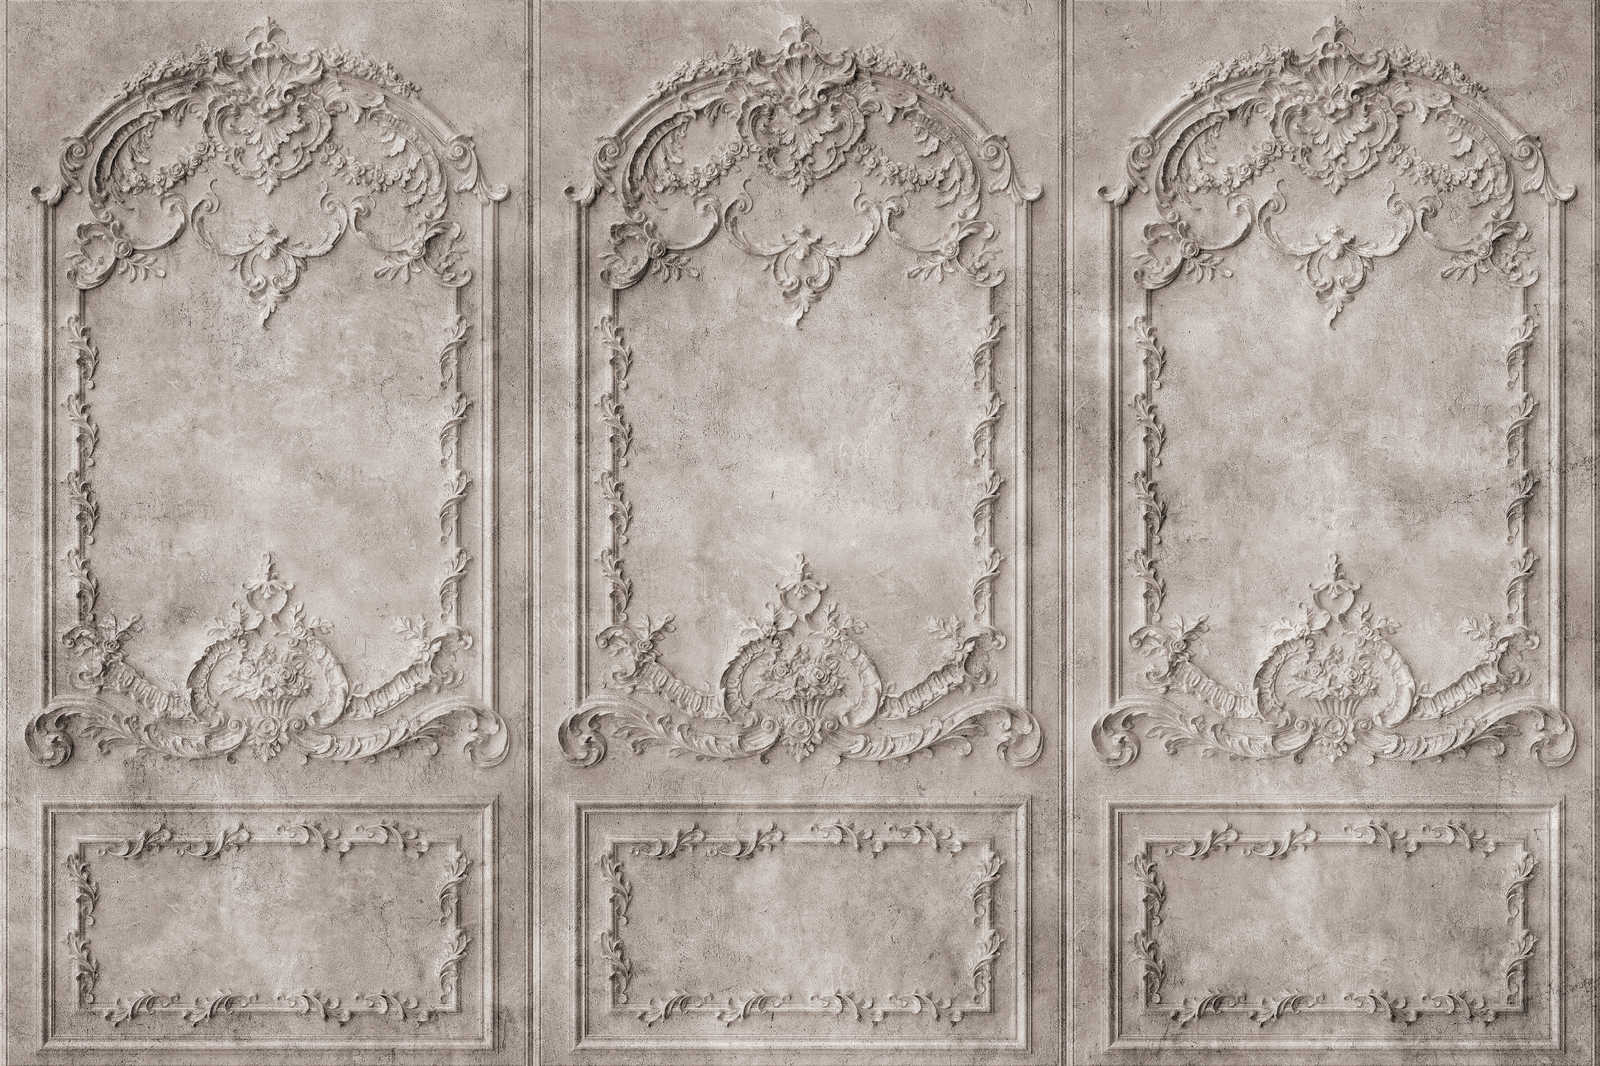             Versailles 1 - Toile Gris-Brun Panneaux en bois de style baroque - 1,20 m x 0,80 m
        